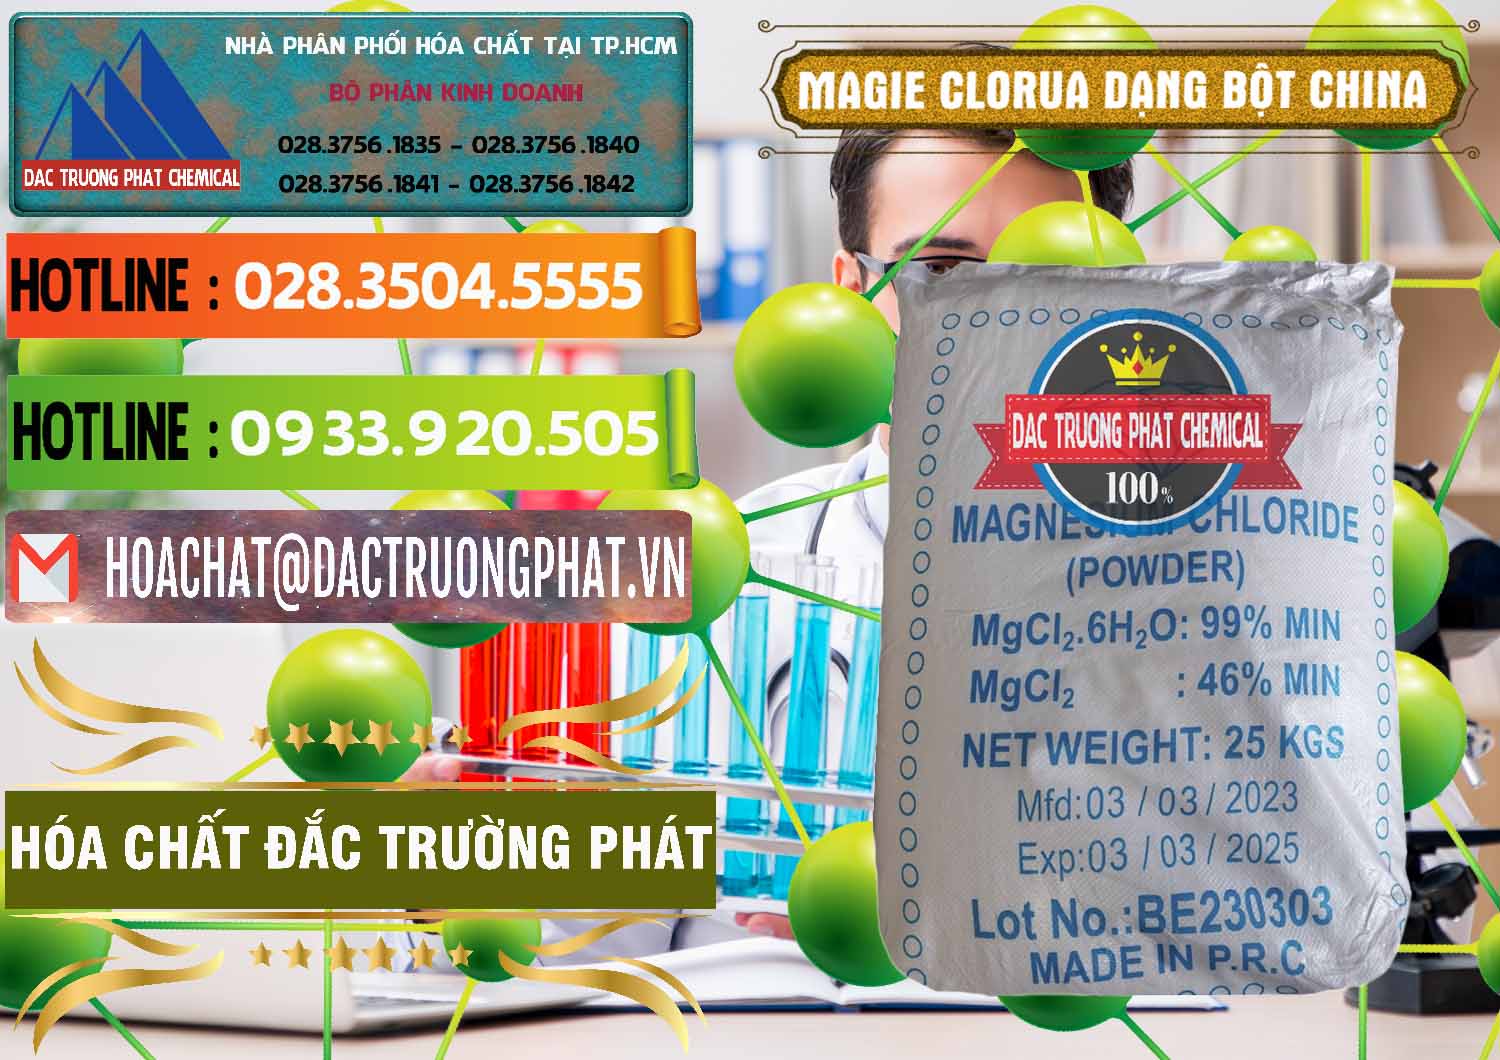 Chuyên cung ứng _ bán Magie Clorua – MGCL2 96% Dạng Bột Logo Kim Cương Trung Quốc China - 0387 - Cty chuyên phân phối và nhập khẩu hóa chất tại TP.HCM - cungcaphoachat.com.vn